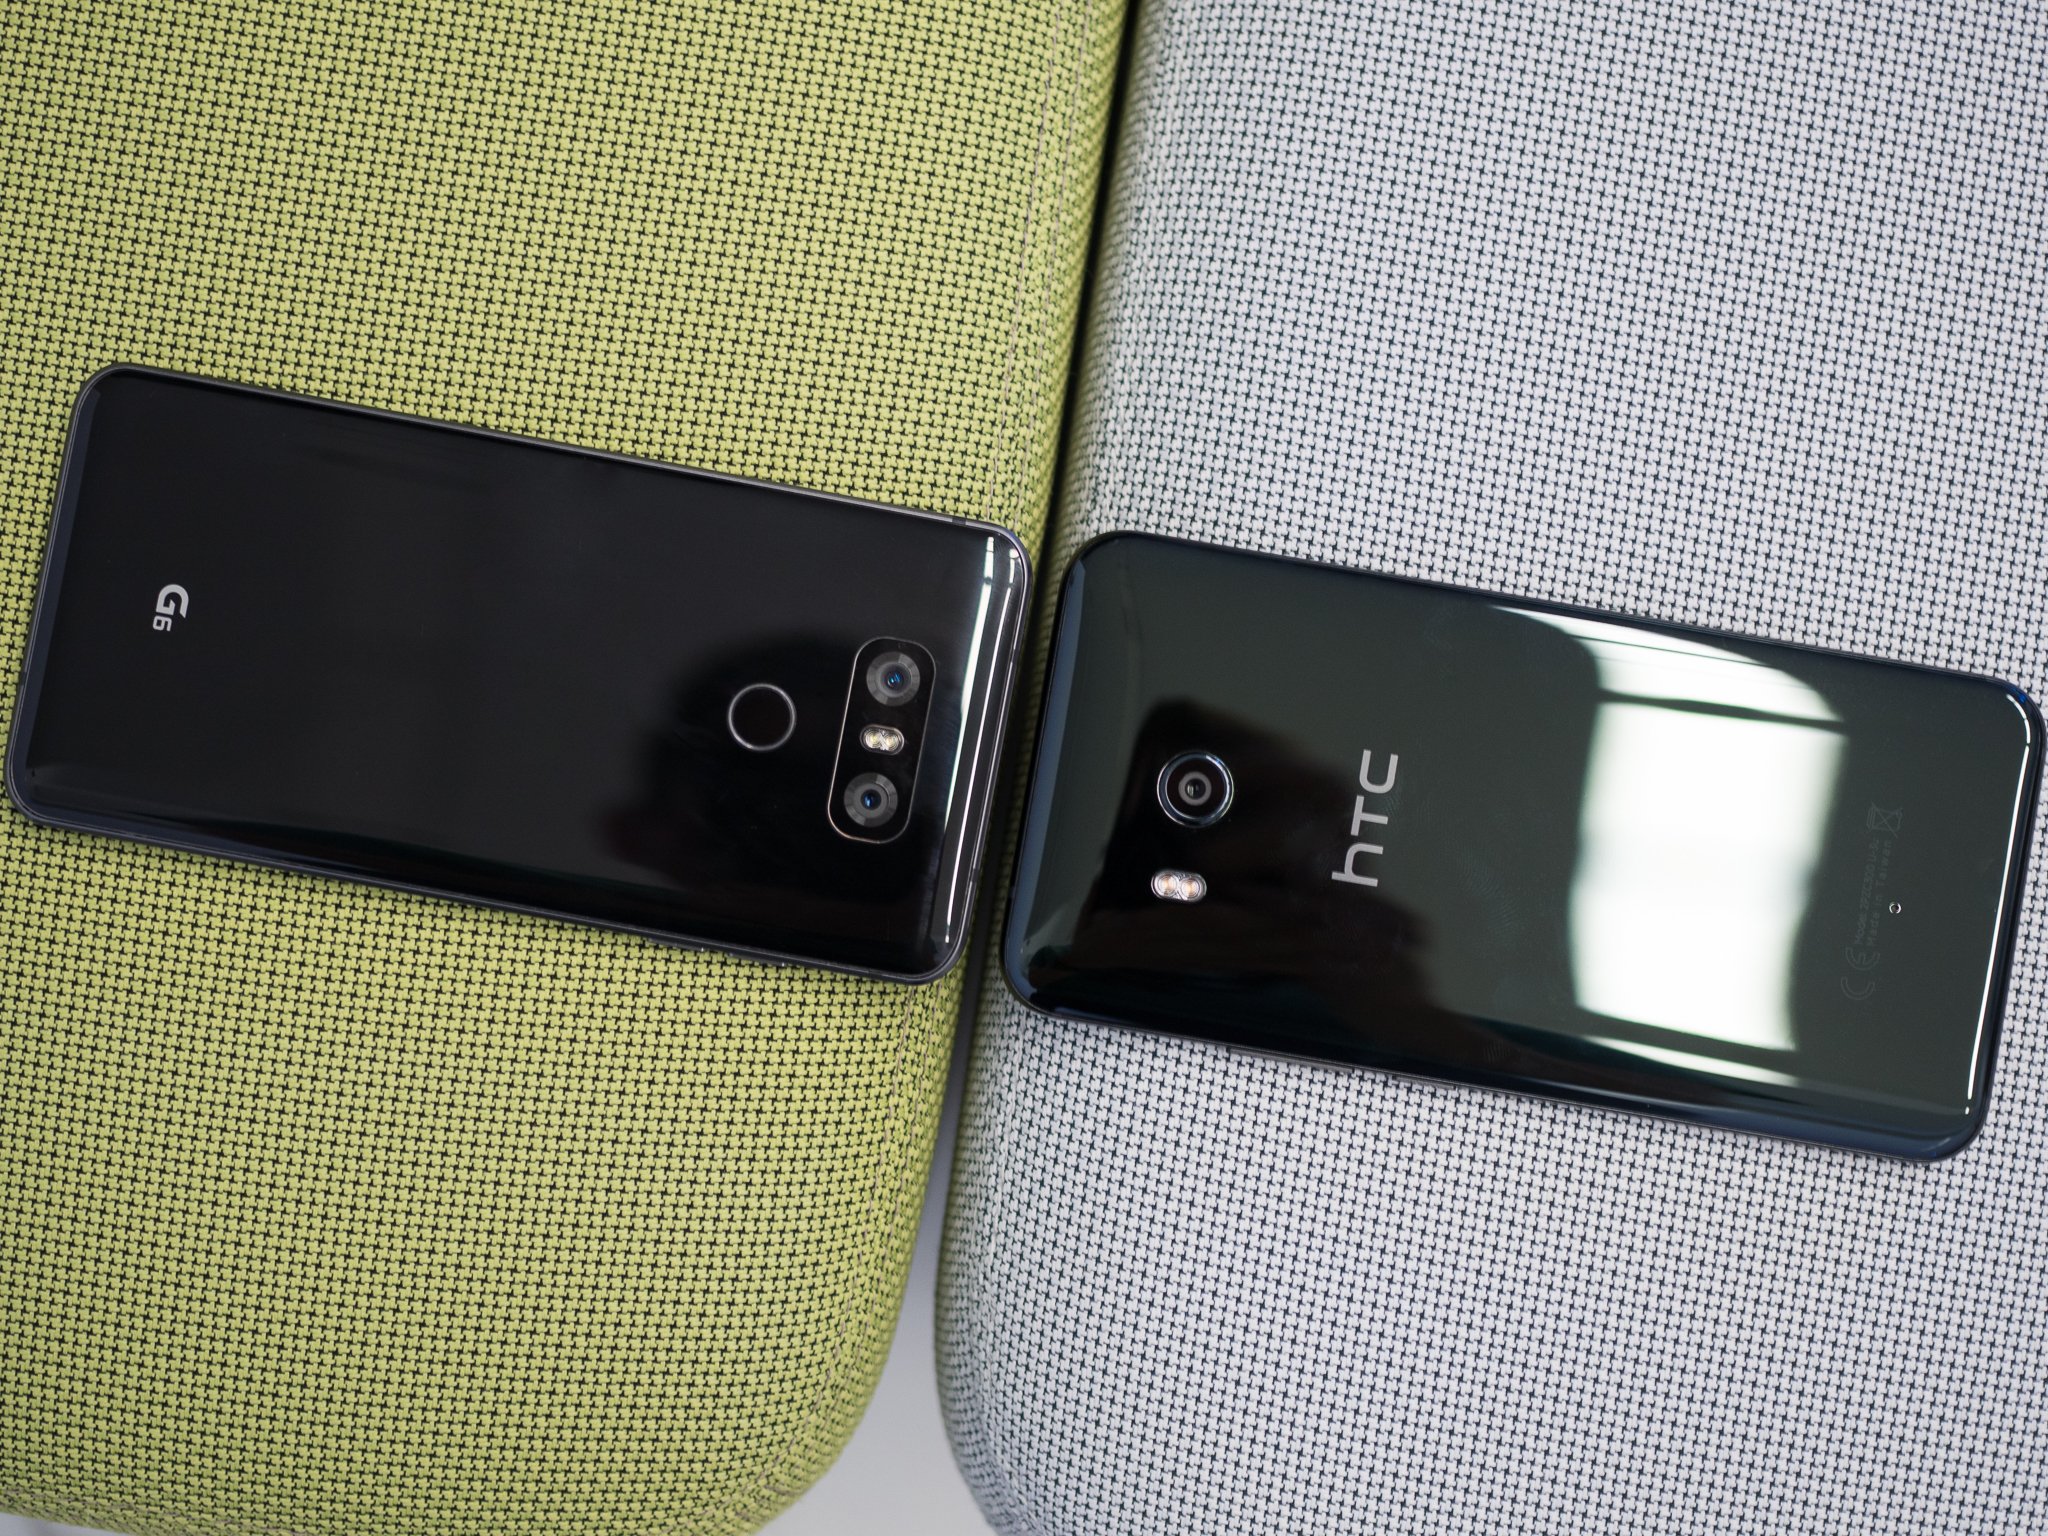 HTC U11 vs. LG G6